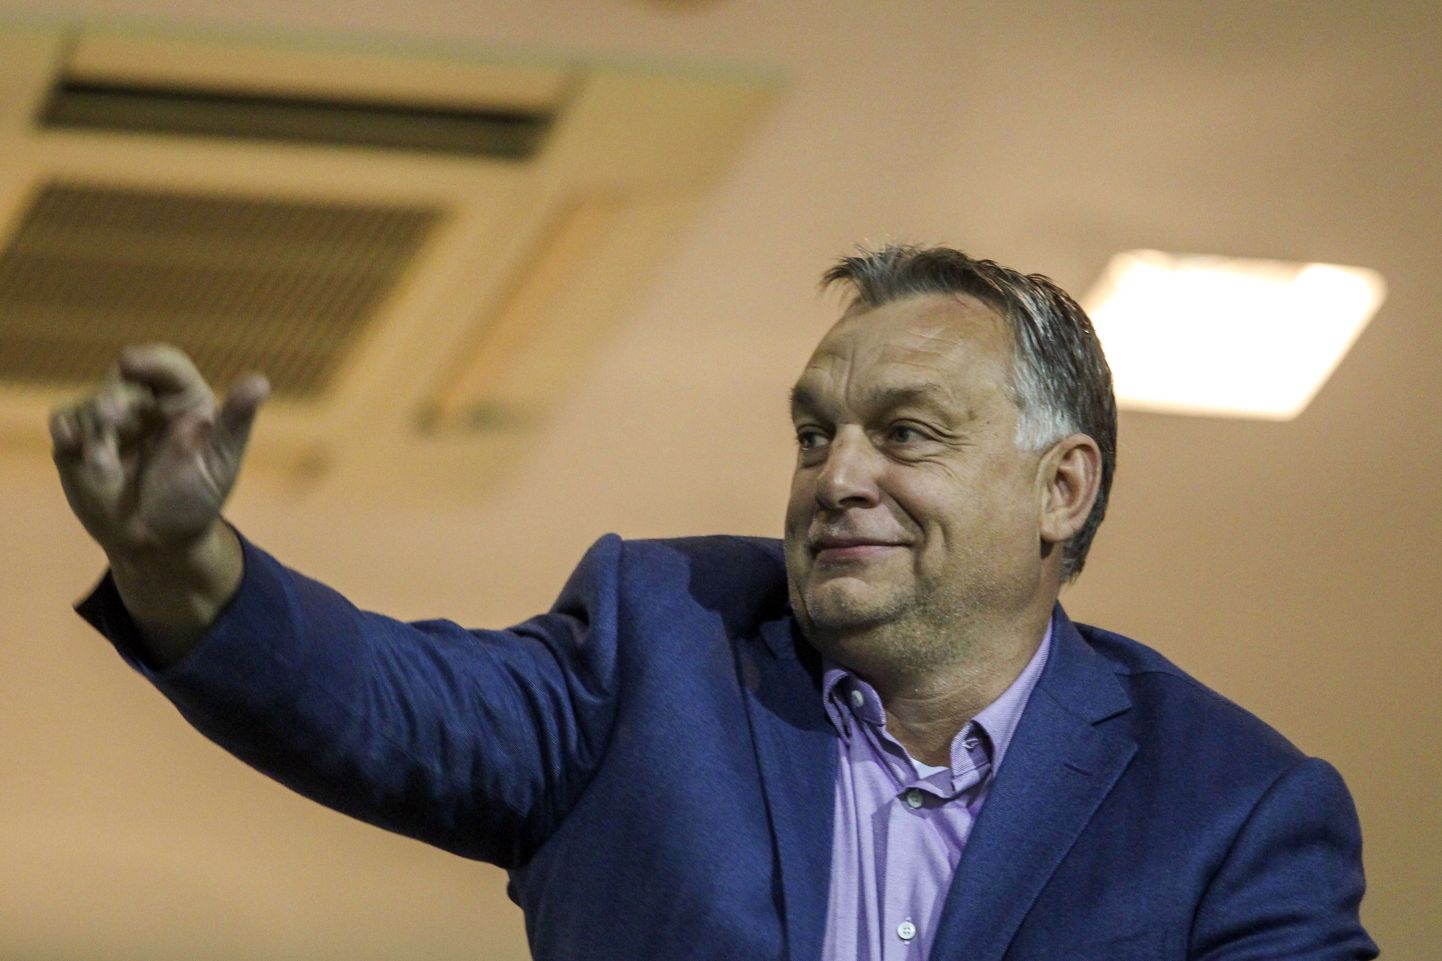 Ungaris lõpetati peaminister Viktor Orbániga seotud korruptsioonijuhtumi uurimine.